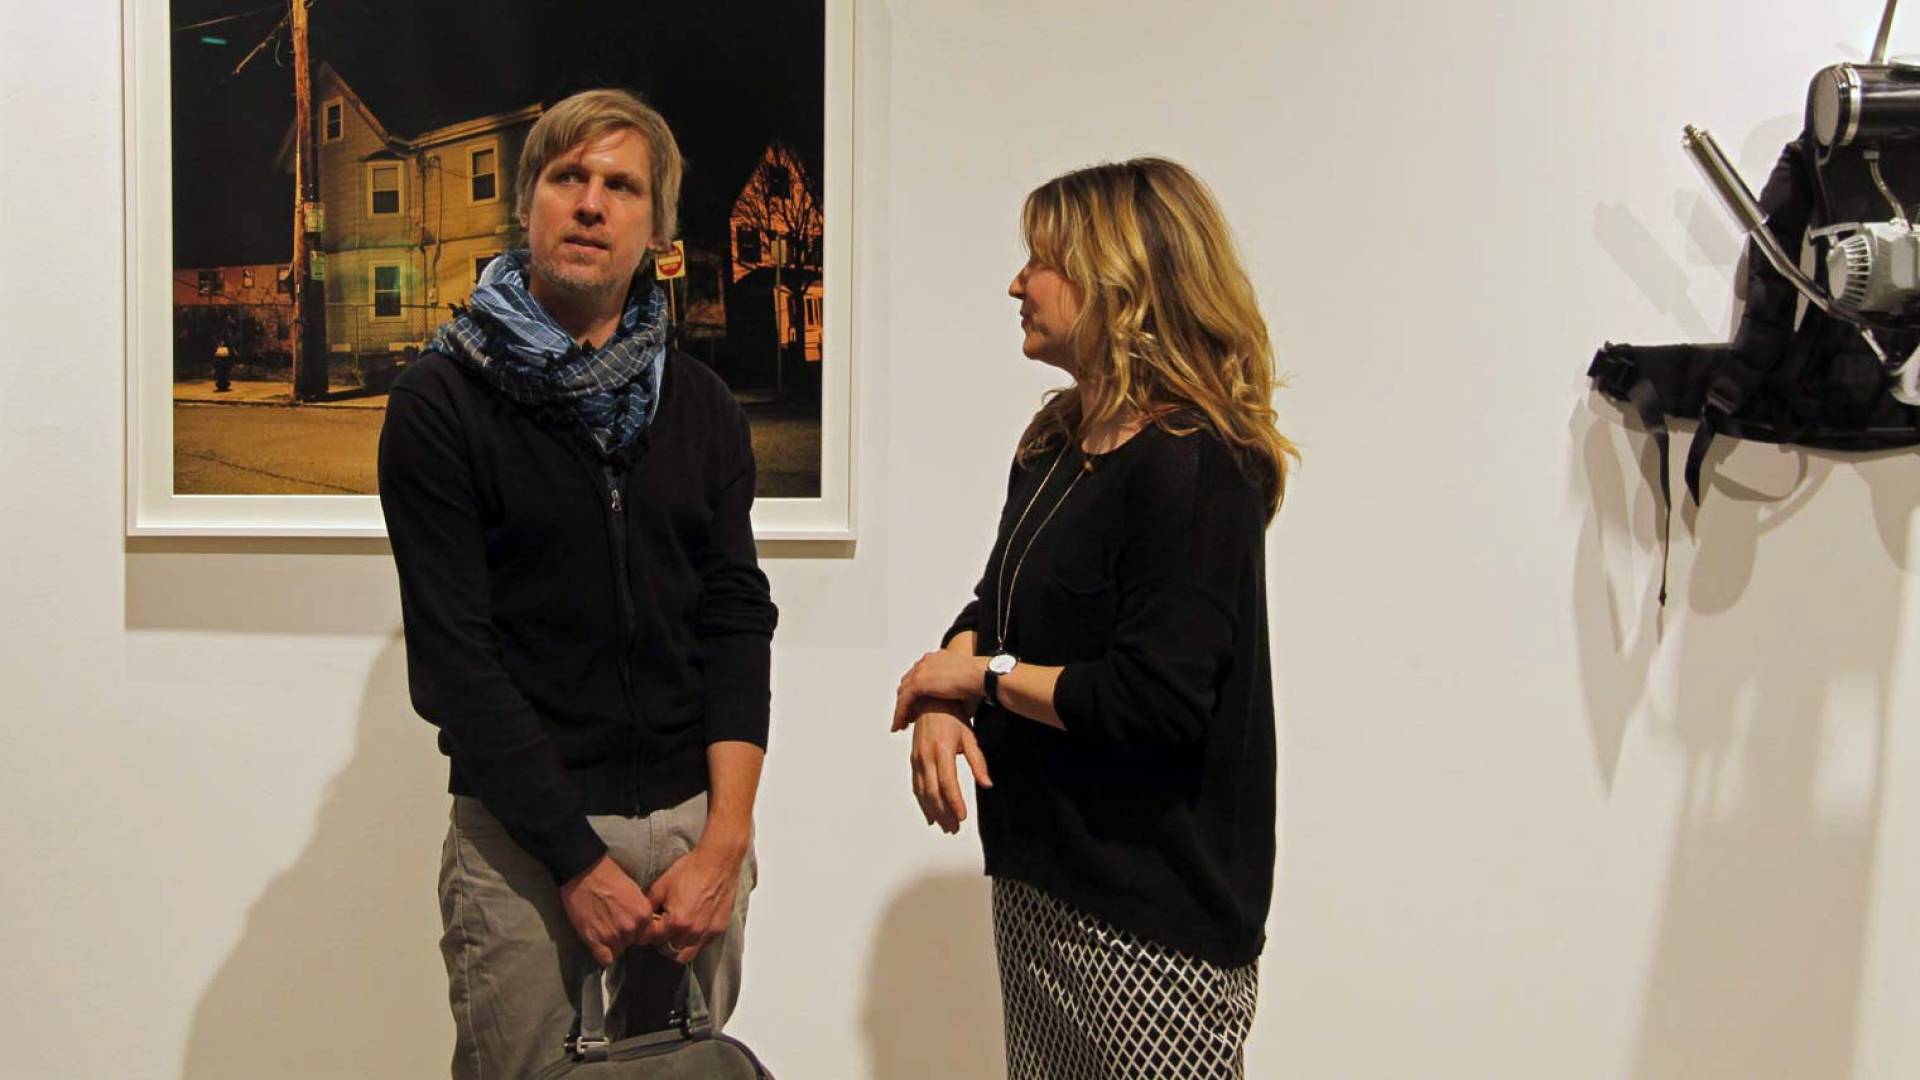 Markus Huber di huber.huber con Nathalie Loch. Il duo di artisti huber.huber è rappresentato da più opere nella collezione d’arte di Helvetia.